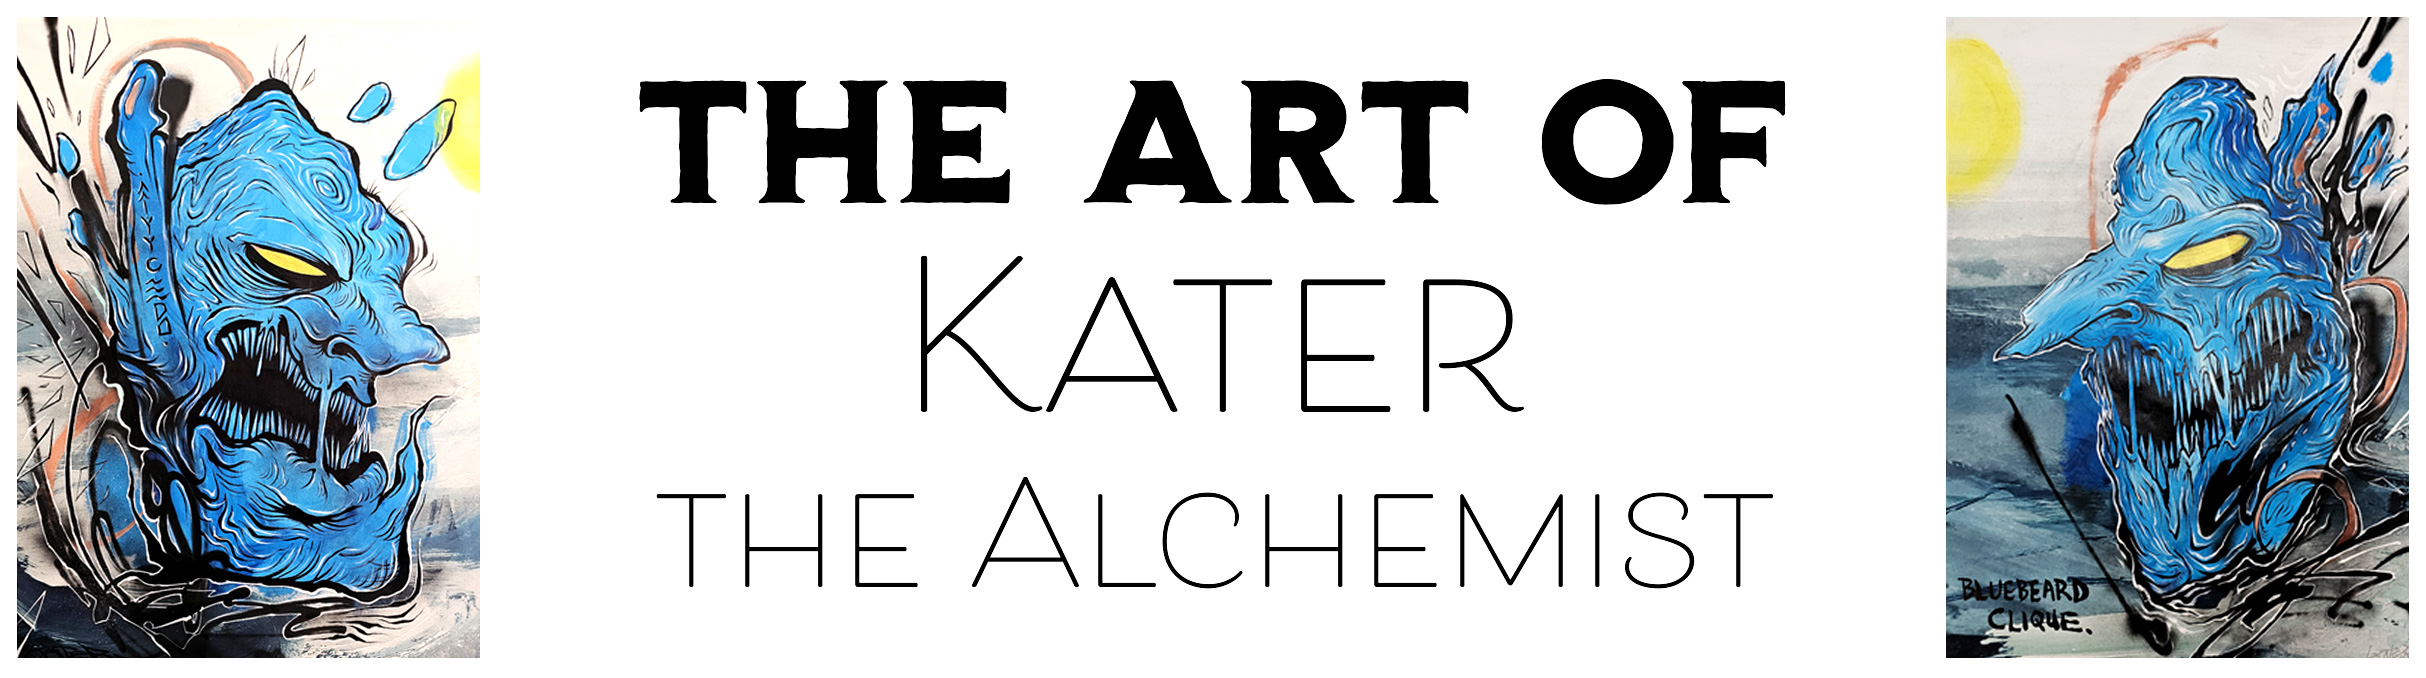 Art of Kater The Alchemist Now thru September